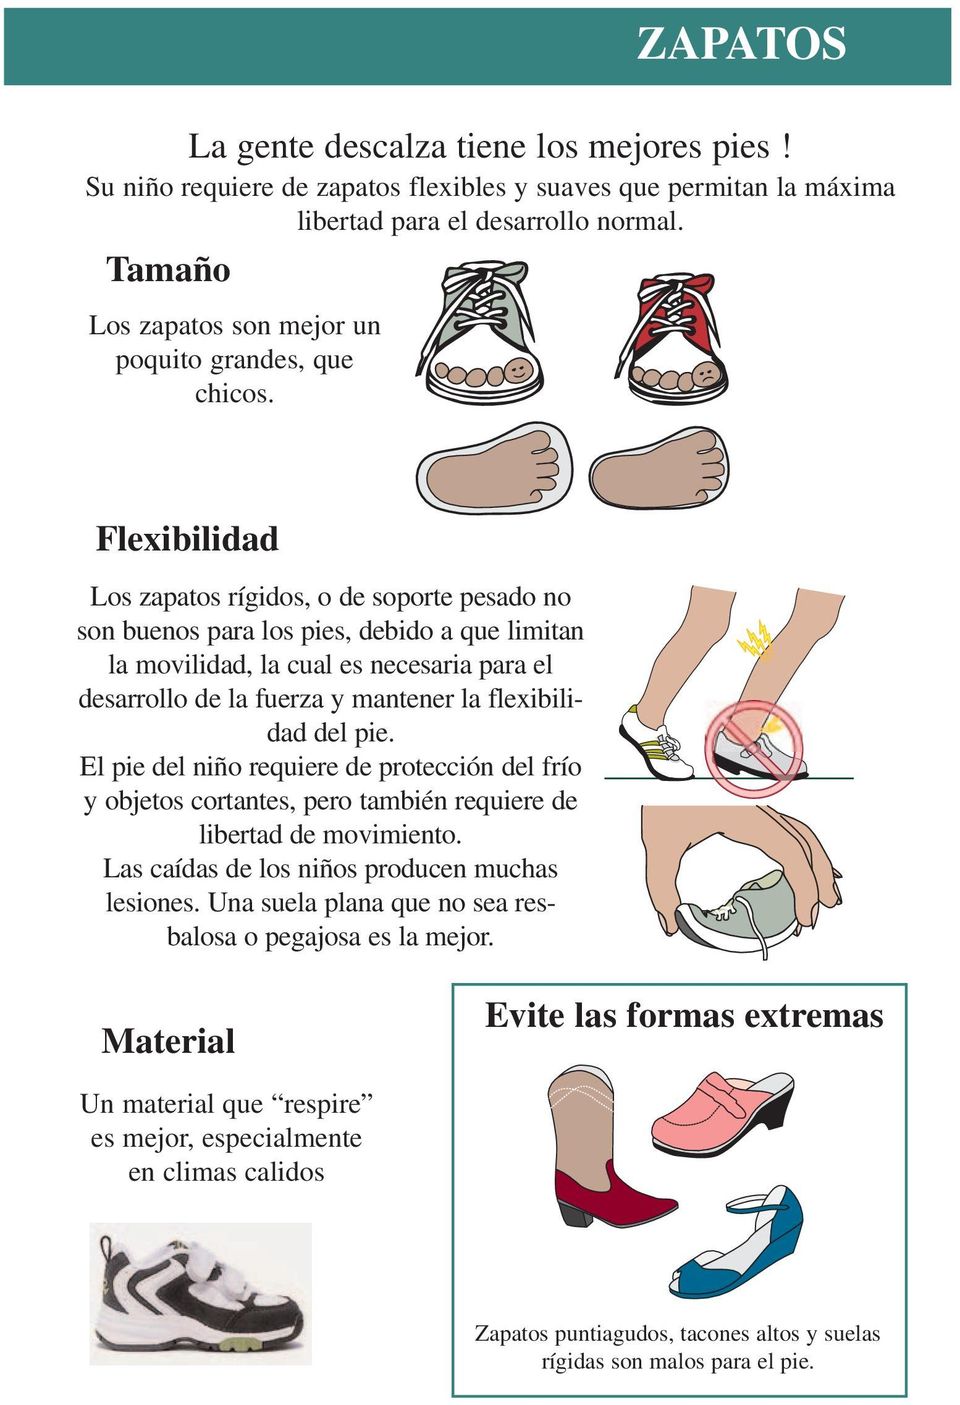 Flexibilidad Los zapatos rígidos, o de soporte pesado no son buenos para los pies, debido a que limitan la movilidad, la cual es necesaria para el desarrollo de la fuerza y mantener la flexibilidad